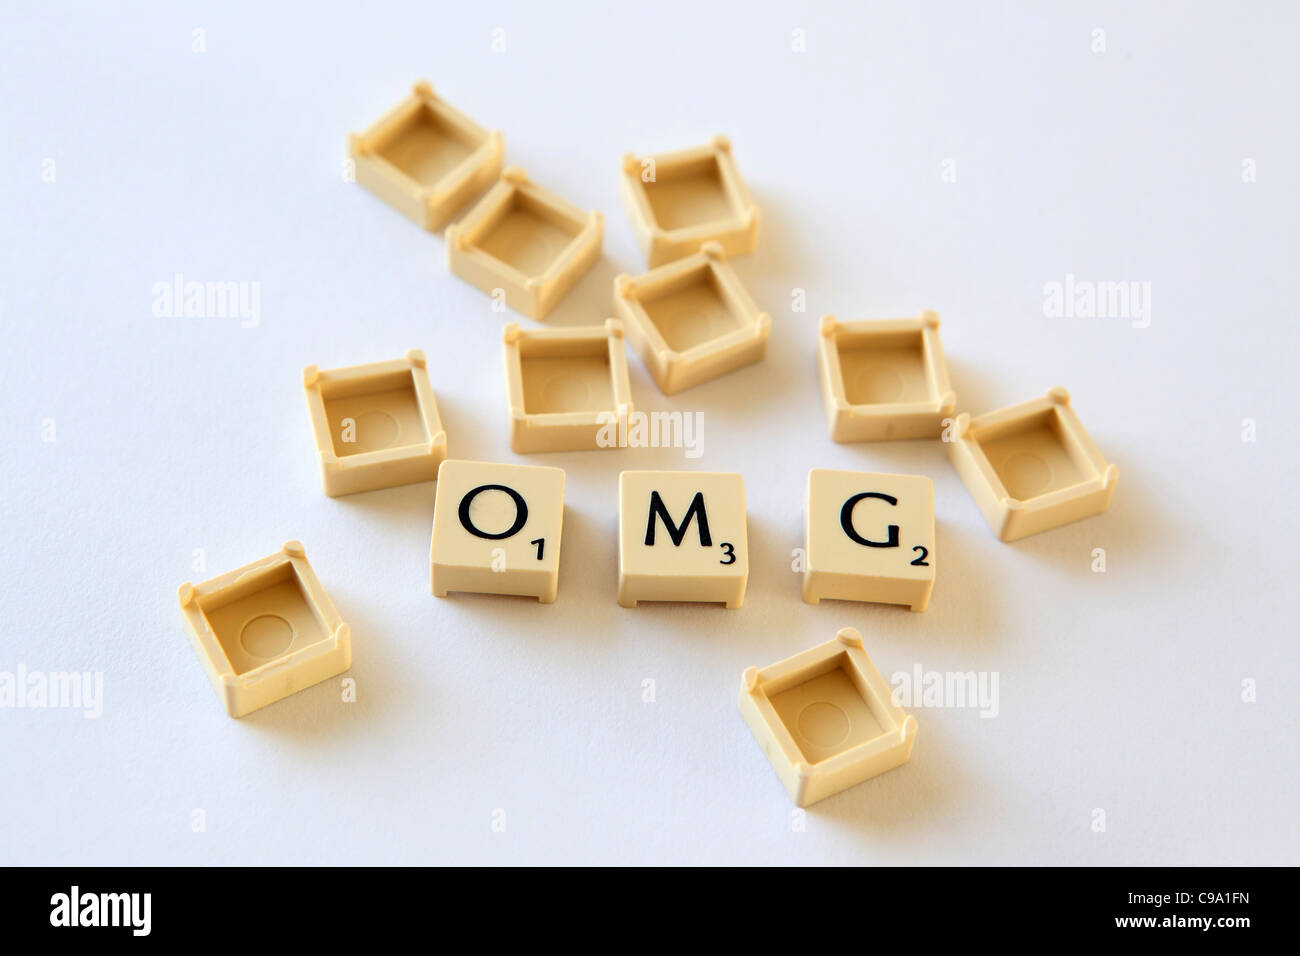 'OMG' enunciato nella lettera di Scrabble piastrelle piazze, isola txt texting parlare in chat, studio fotografico Foto Stock